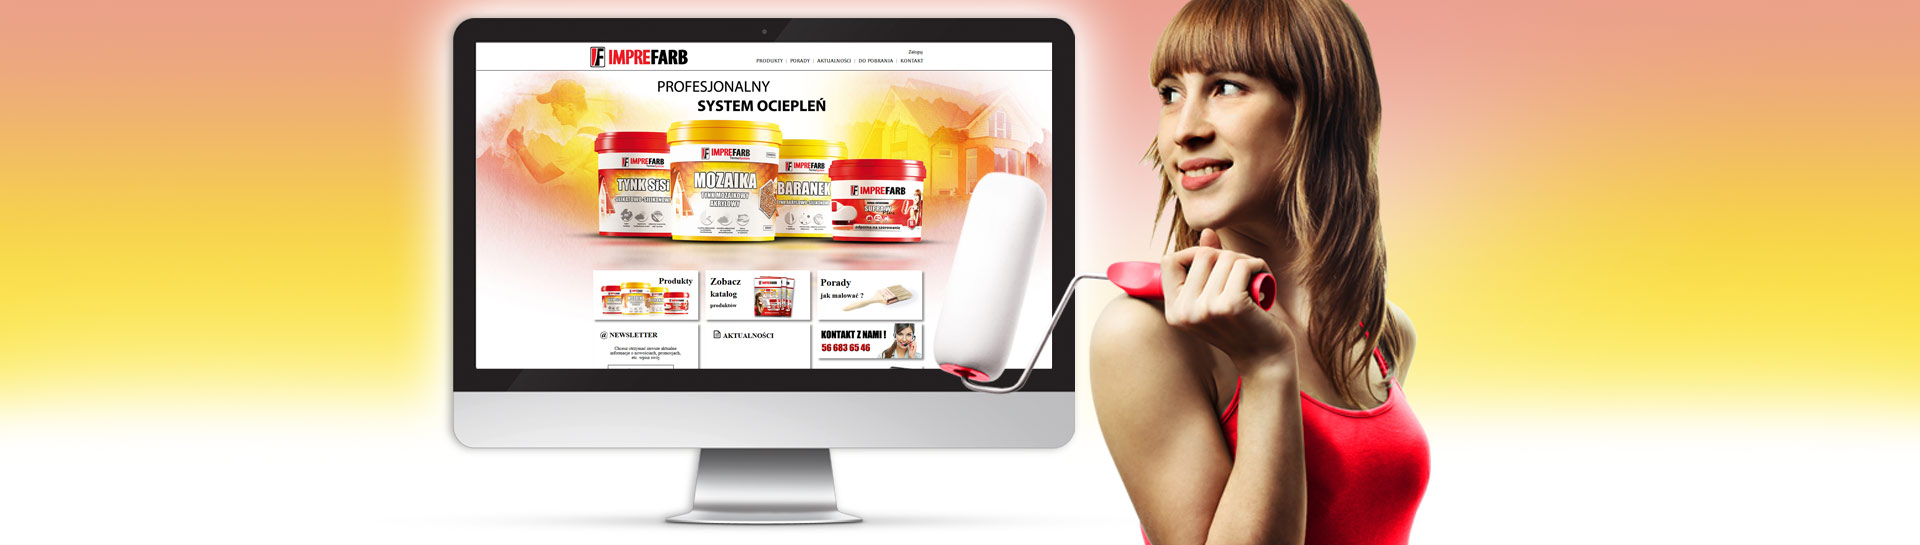  Strona WWW dla firmy Imprefarb2 - Agencja Reklamowa ImagoArt.pl